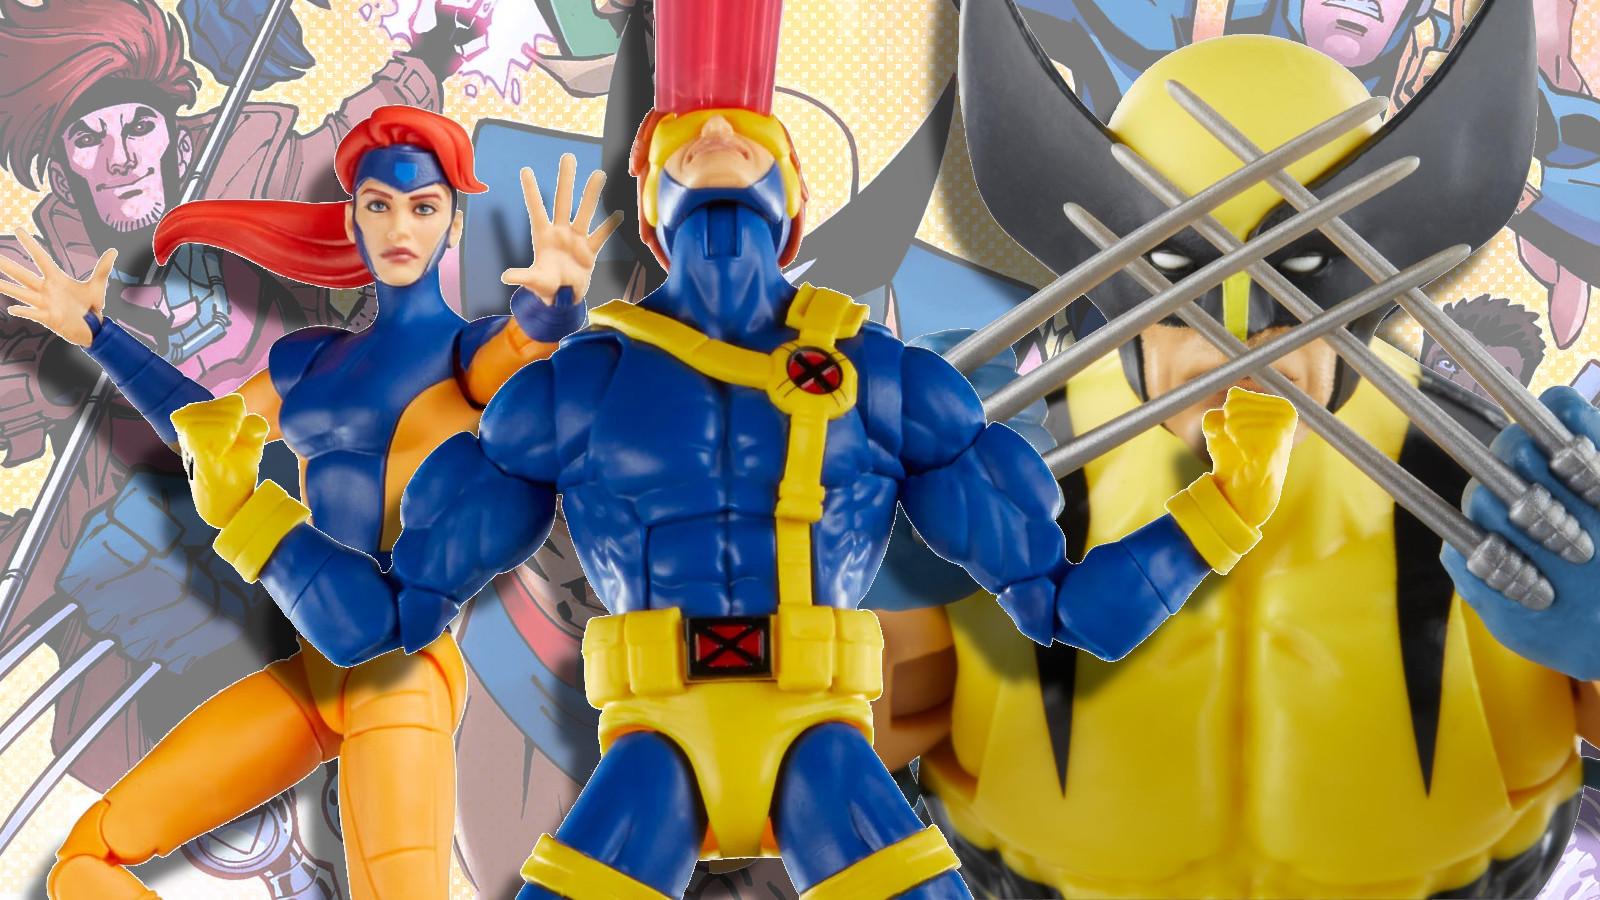 X-Men '97 Marvel Legends figures